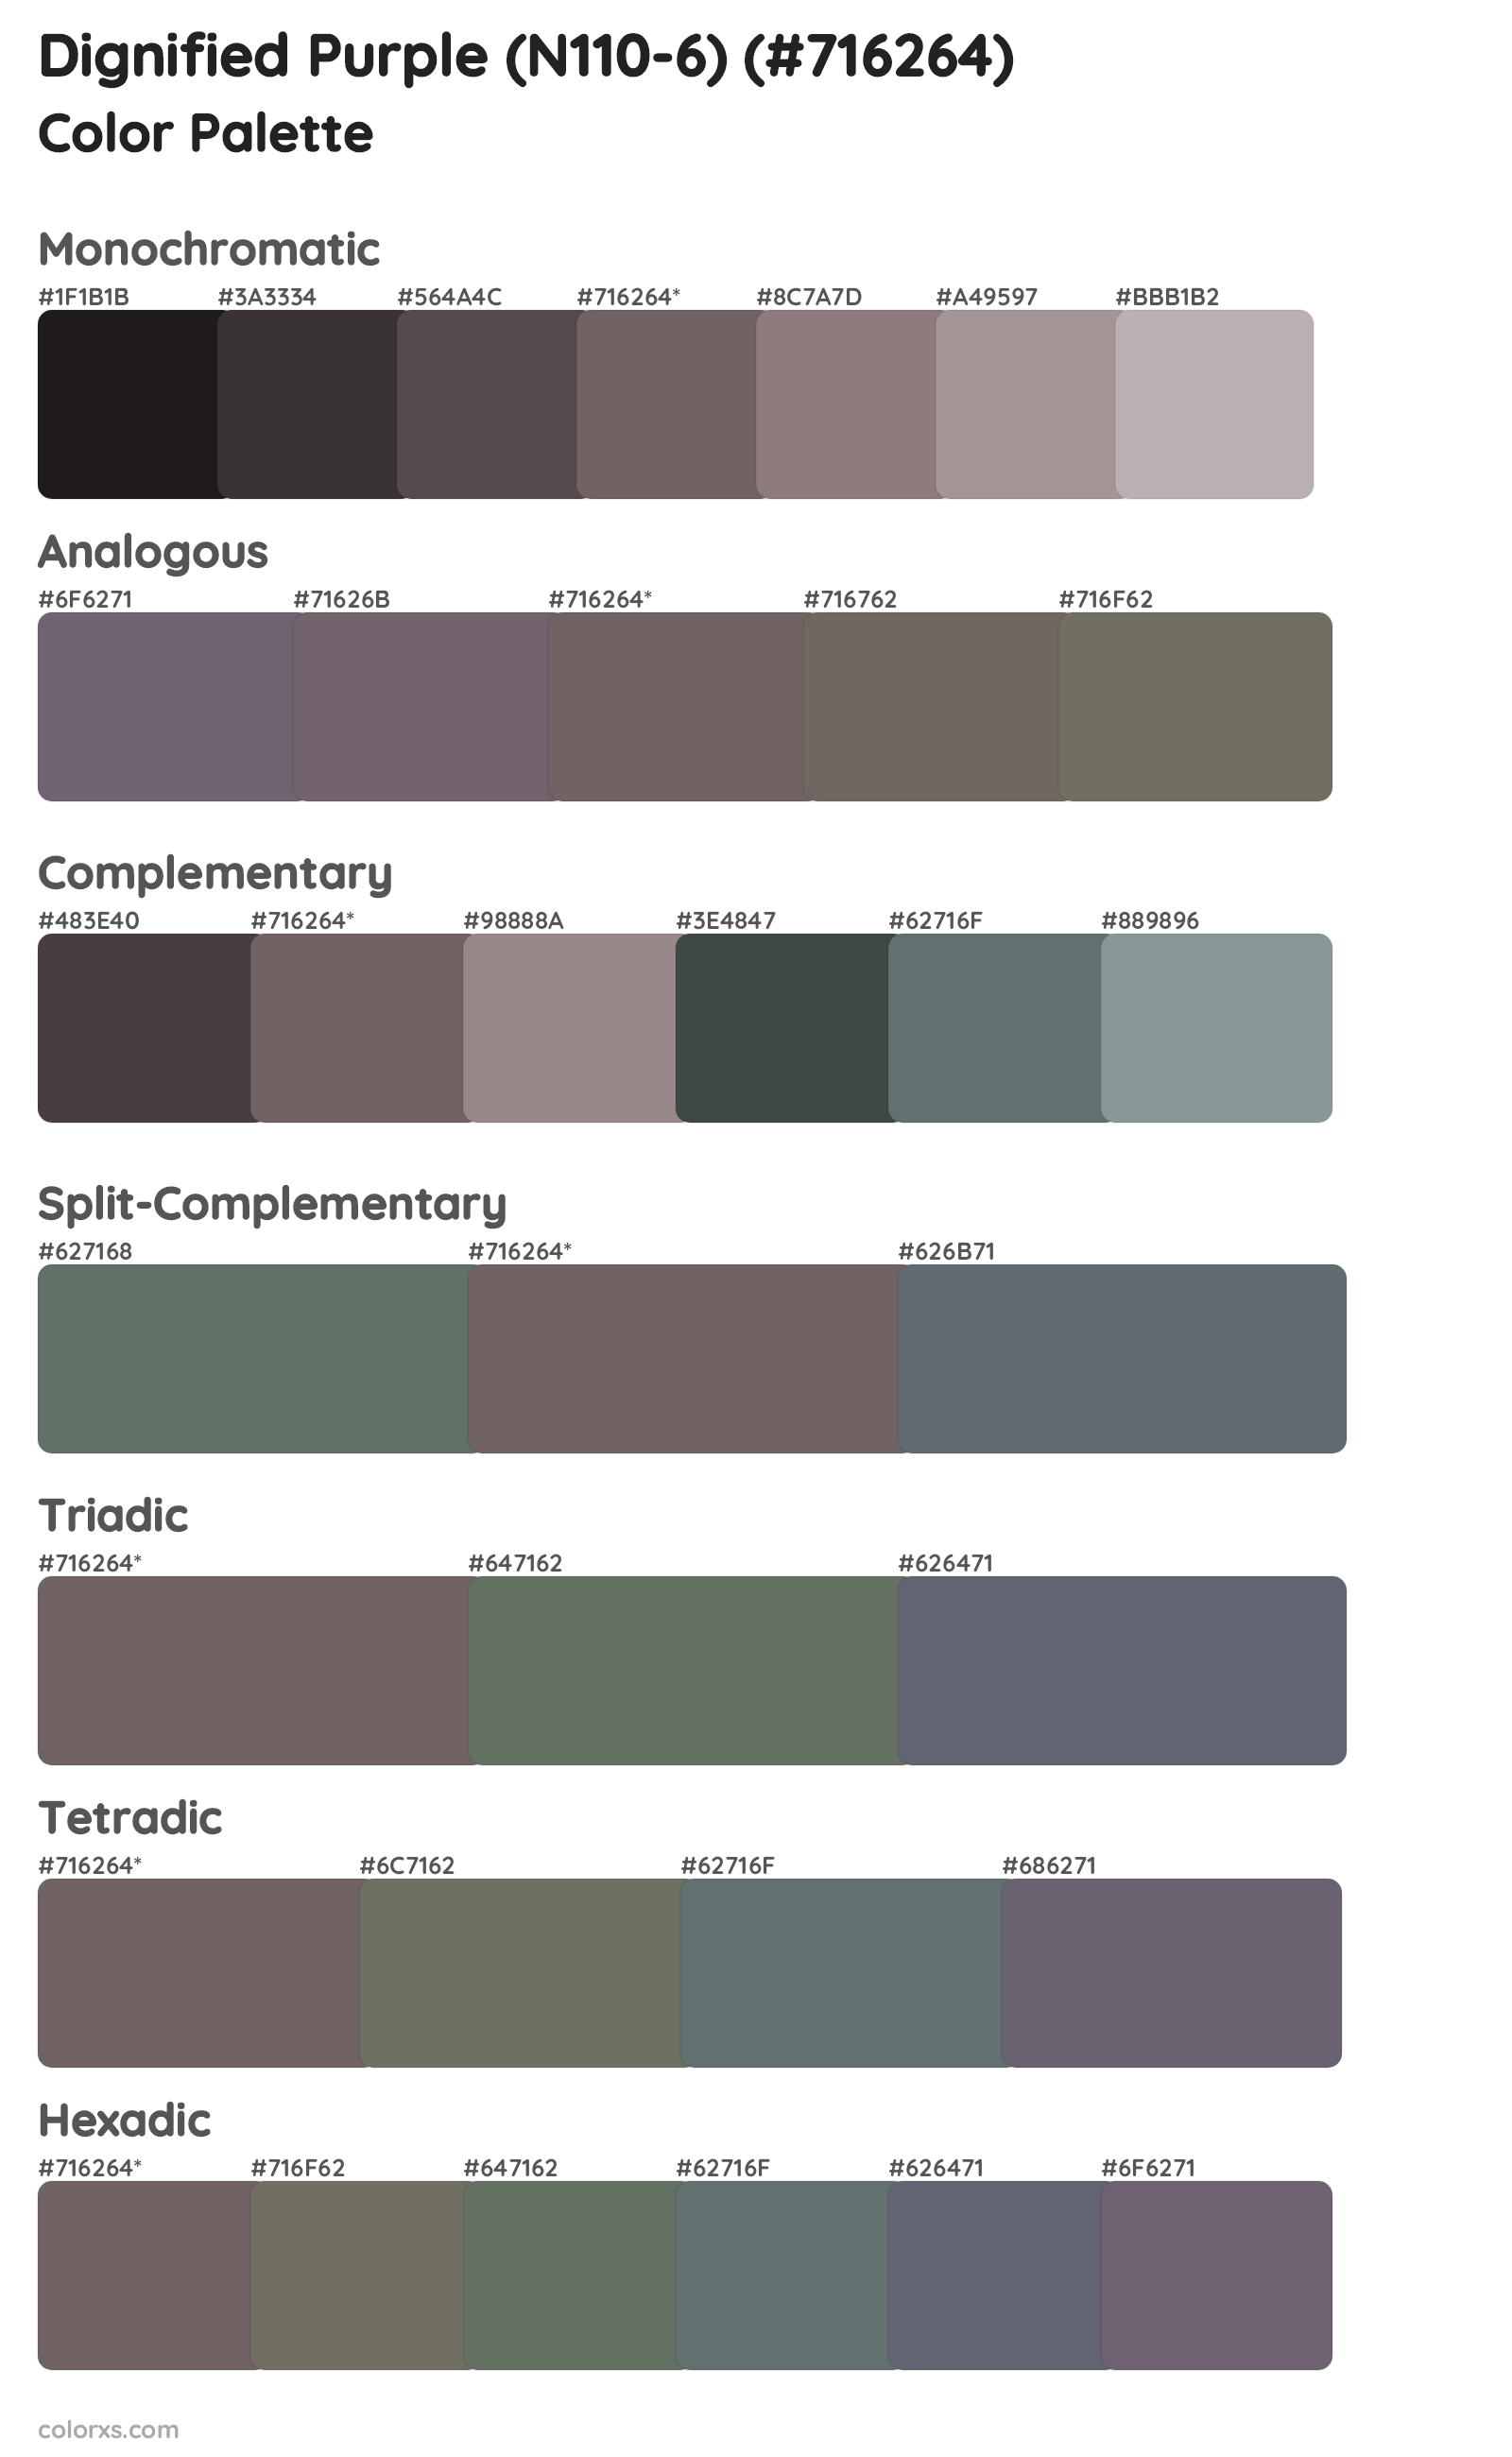 Dignified Purple (N110-6) Color Scheme Palettes